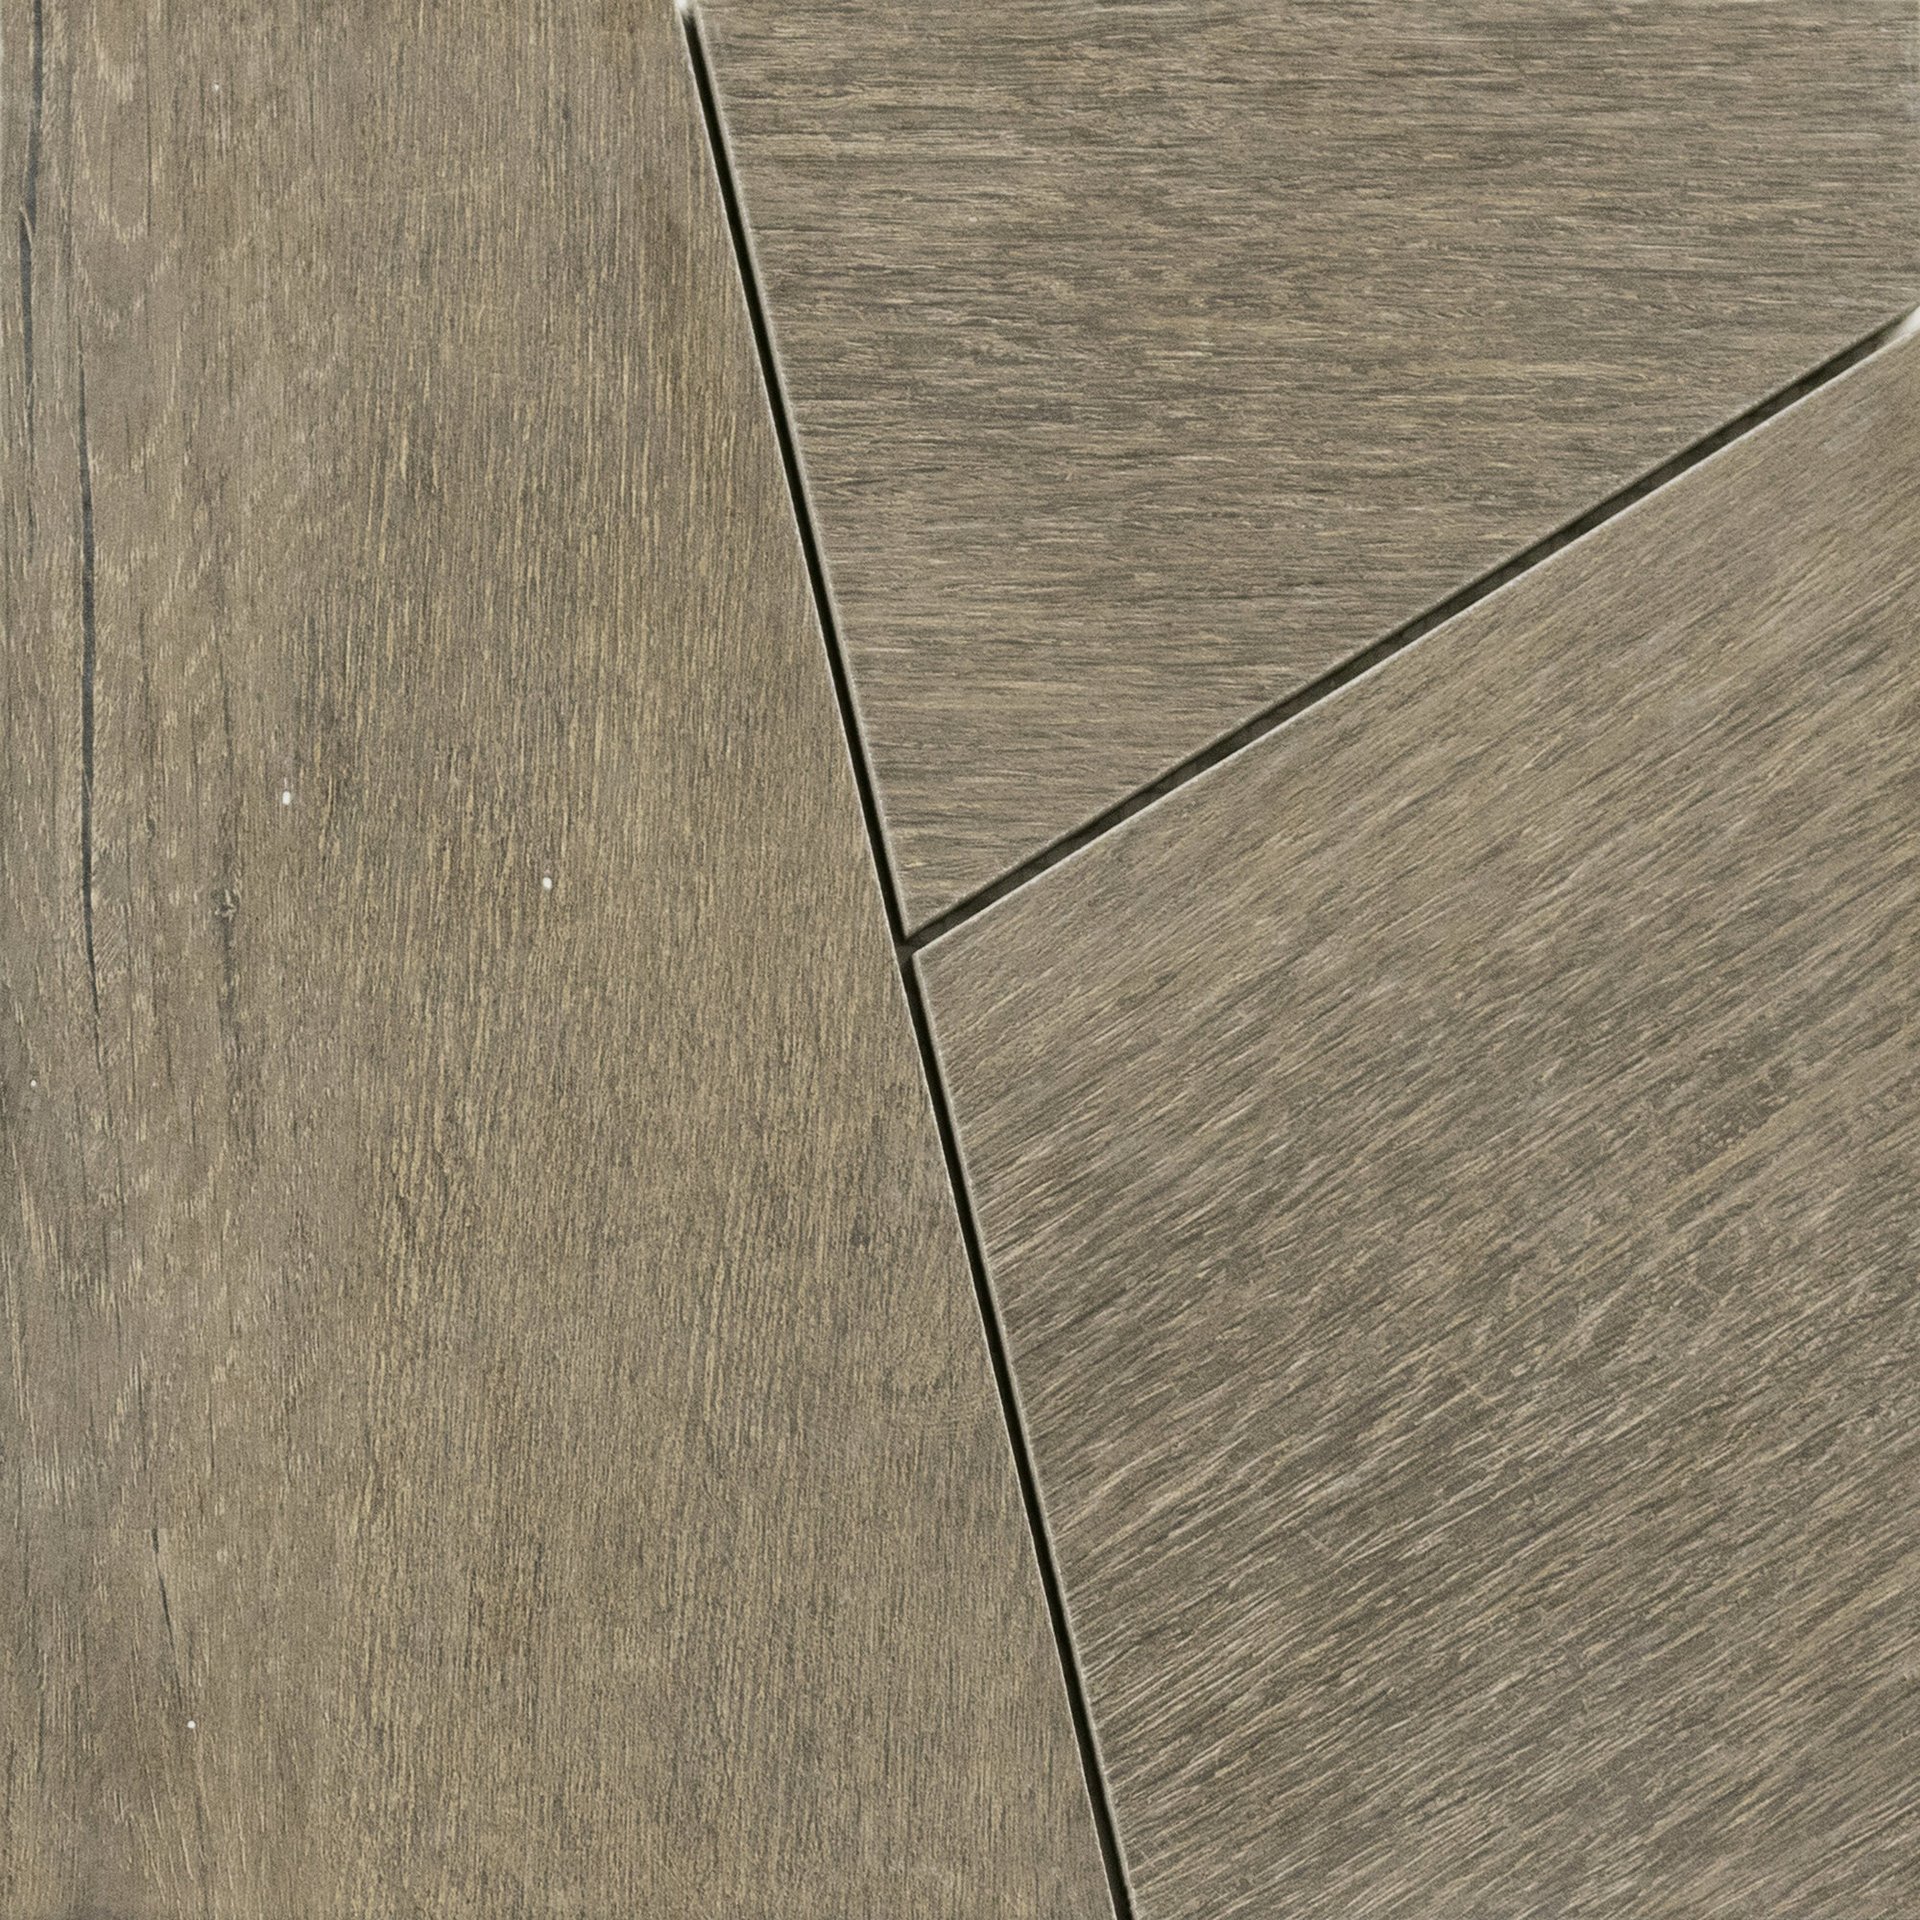 Декоративные элементы Peronda D.Lenk Walnut Tangram/30X30/C 27743, Испания, квадрат, 300x300, фото в высоком разрешении